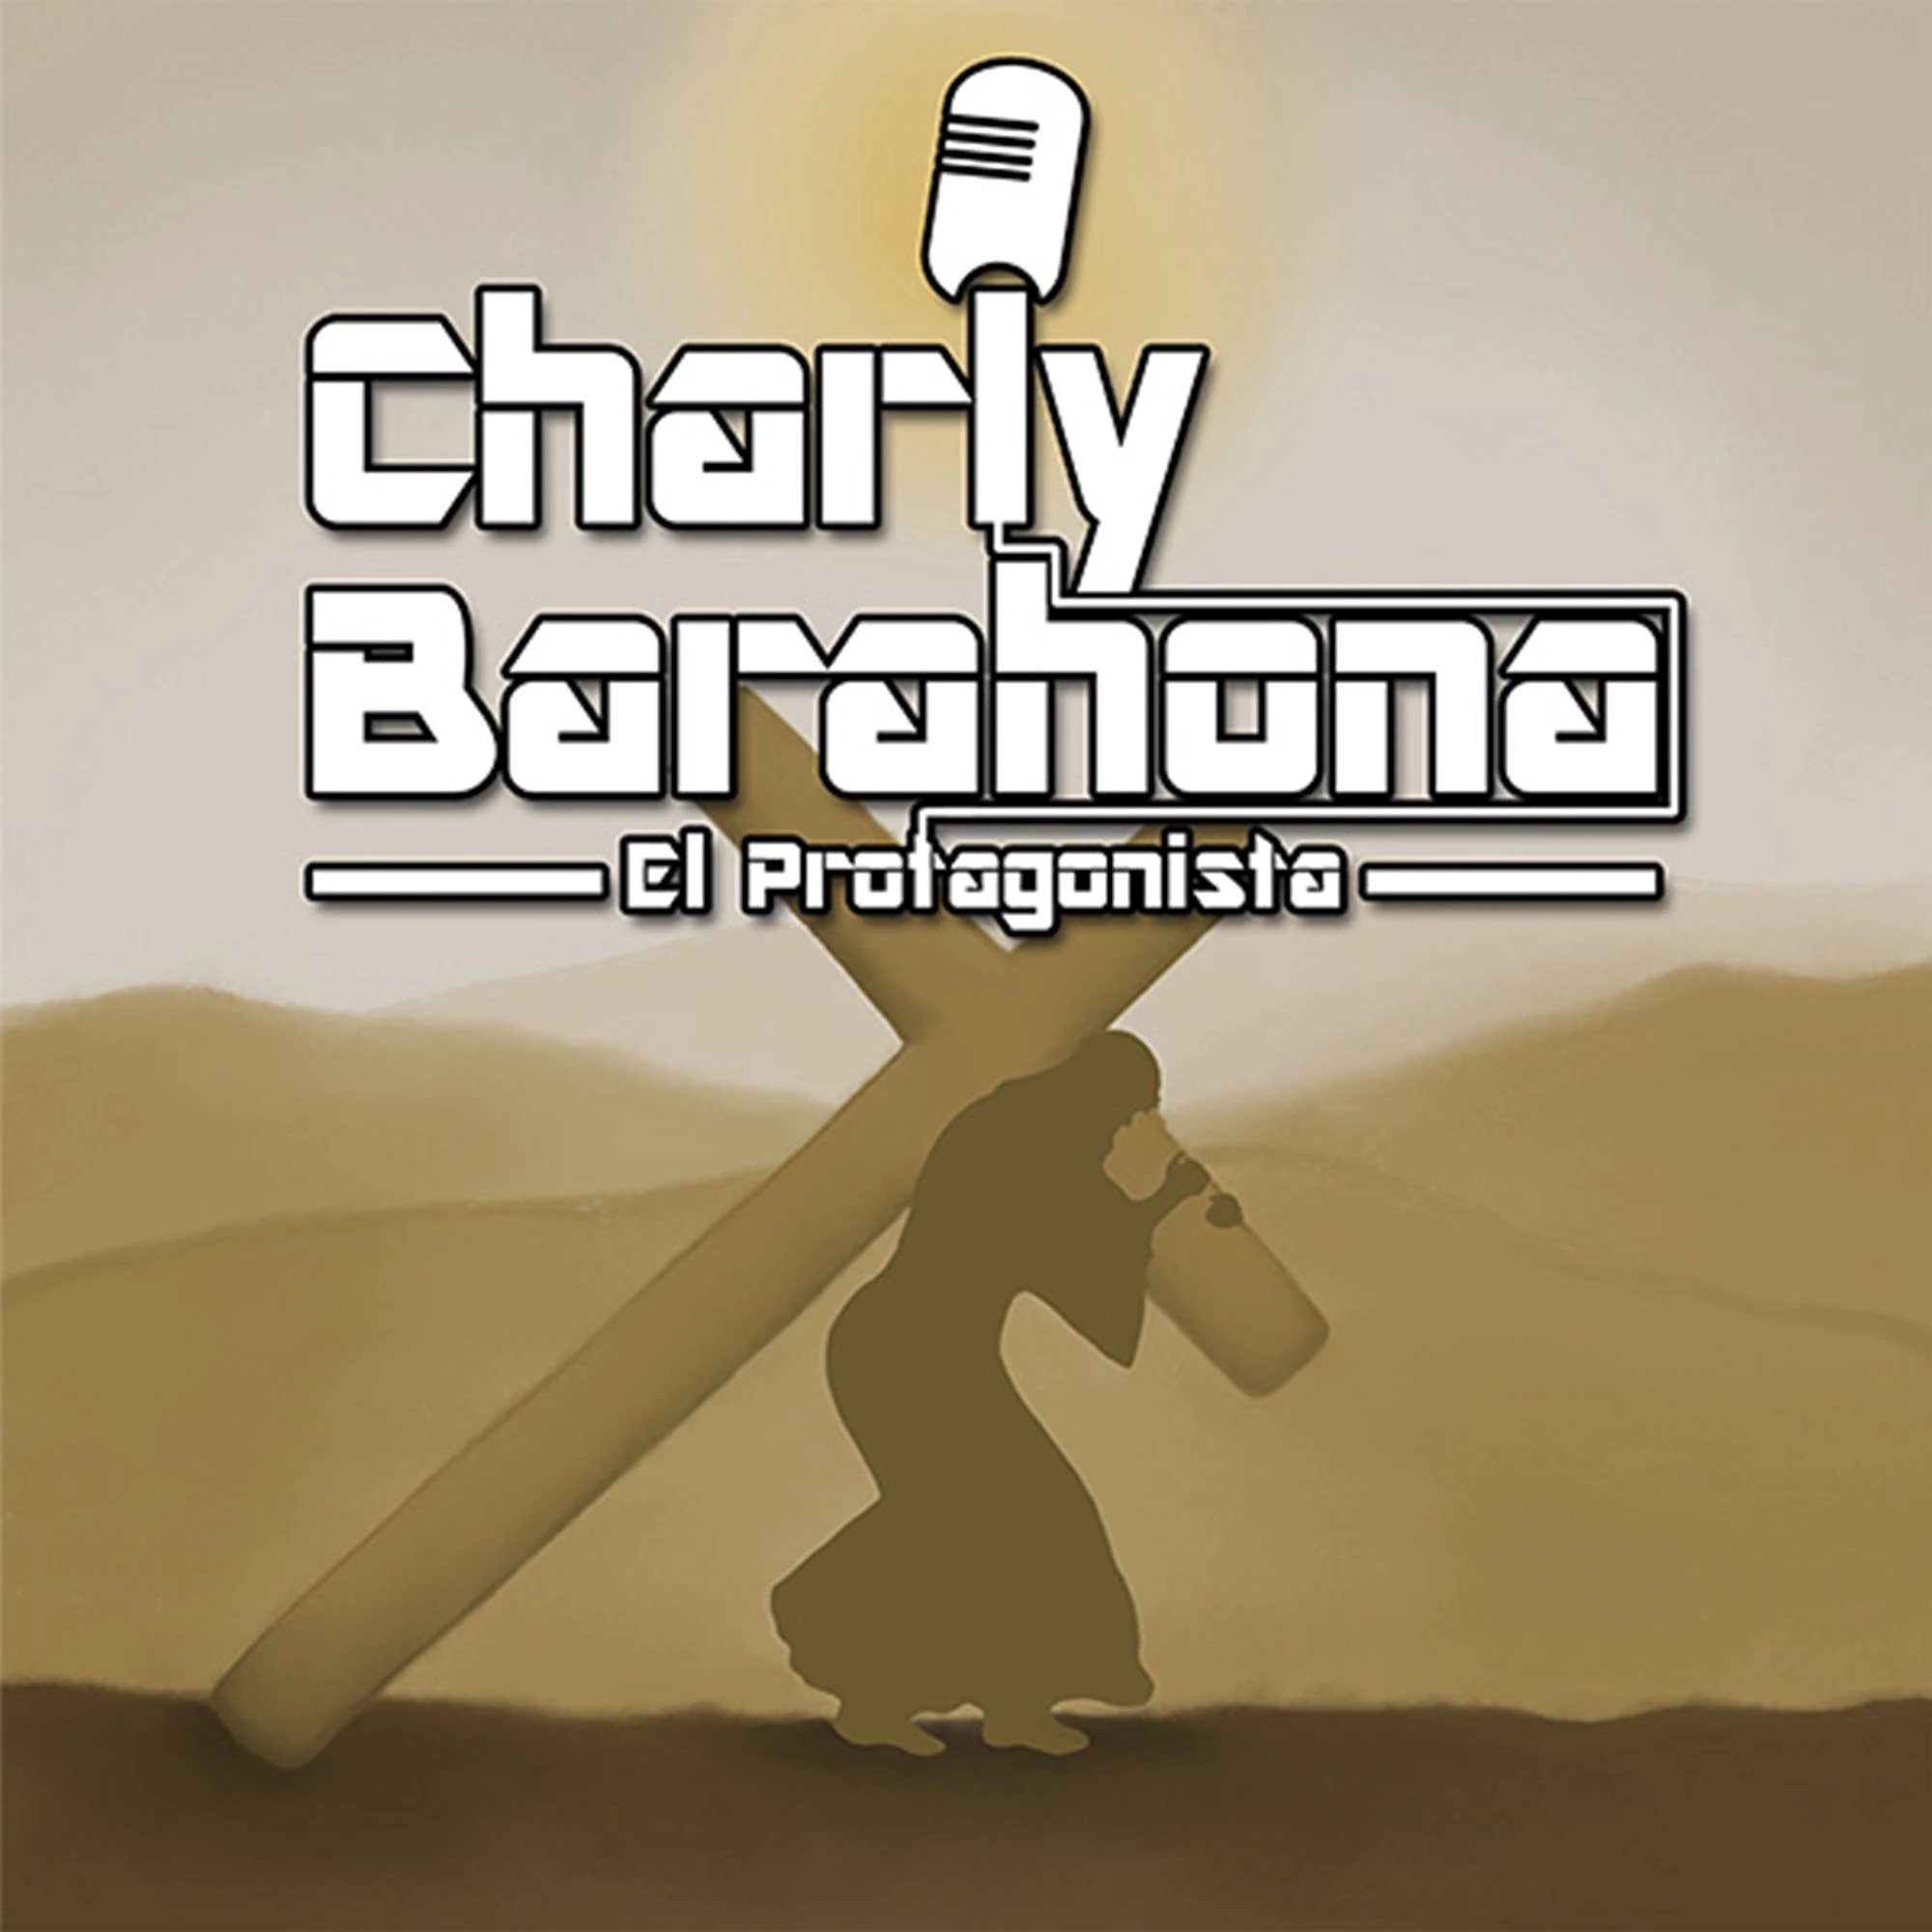 Charly Barahona -- El Protagonista | Musica cristiana | Rap cristiano